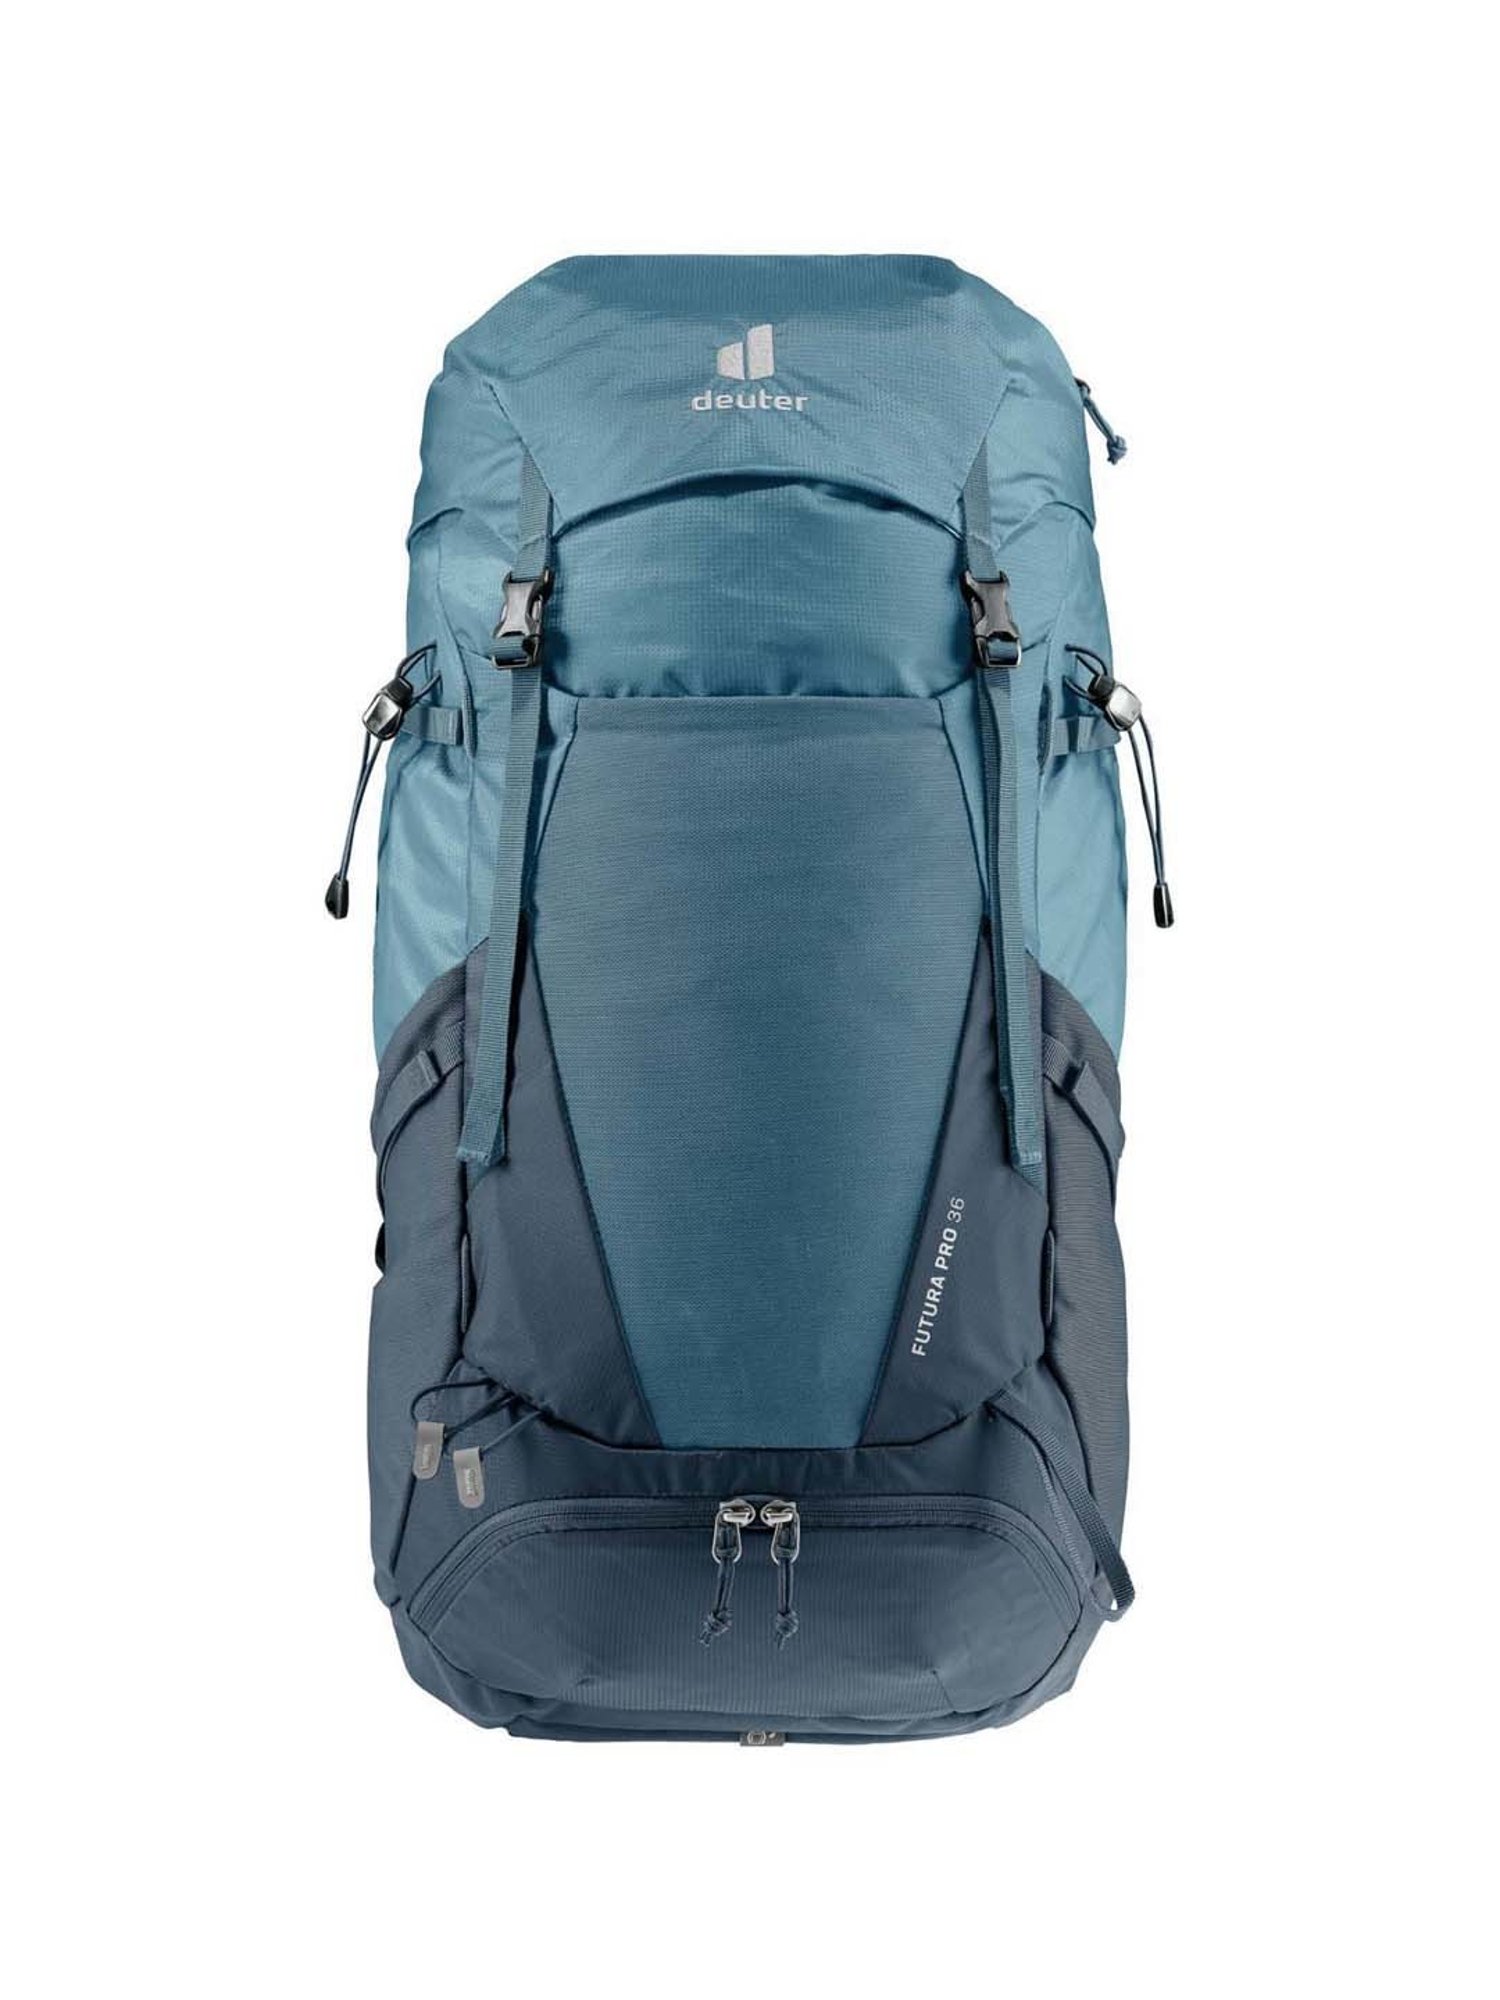 Deuter Futura Pro 40L Backpack · Men's | Curated.com